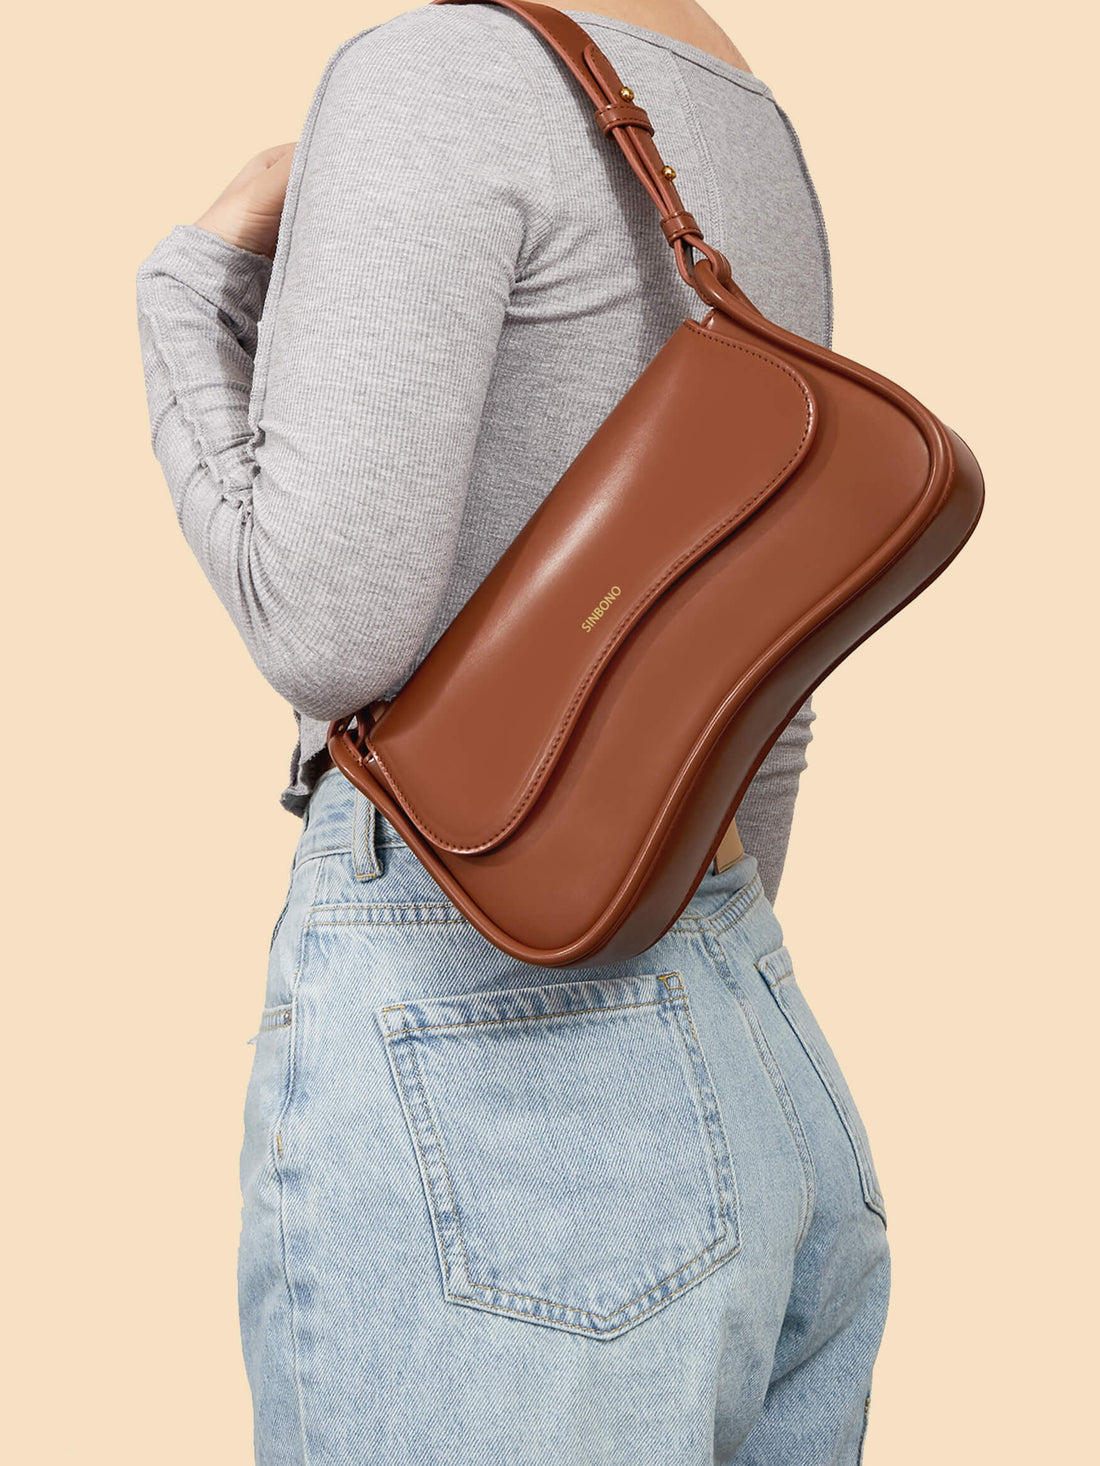 SINBONO Zoe Dark Brown Shoulder Bag - Ecofriendly Vegan Leather Bag